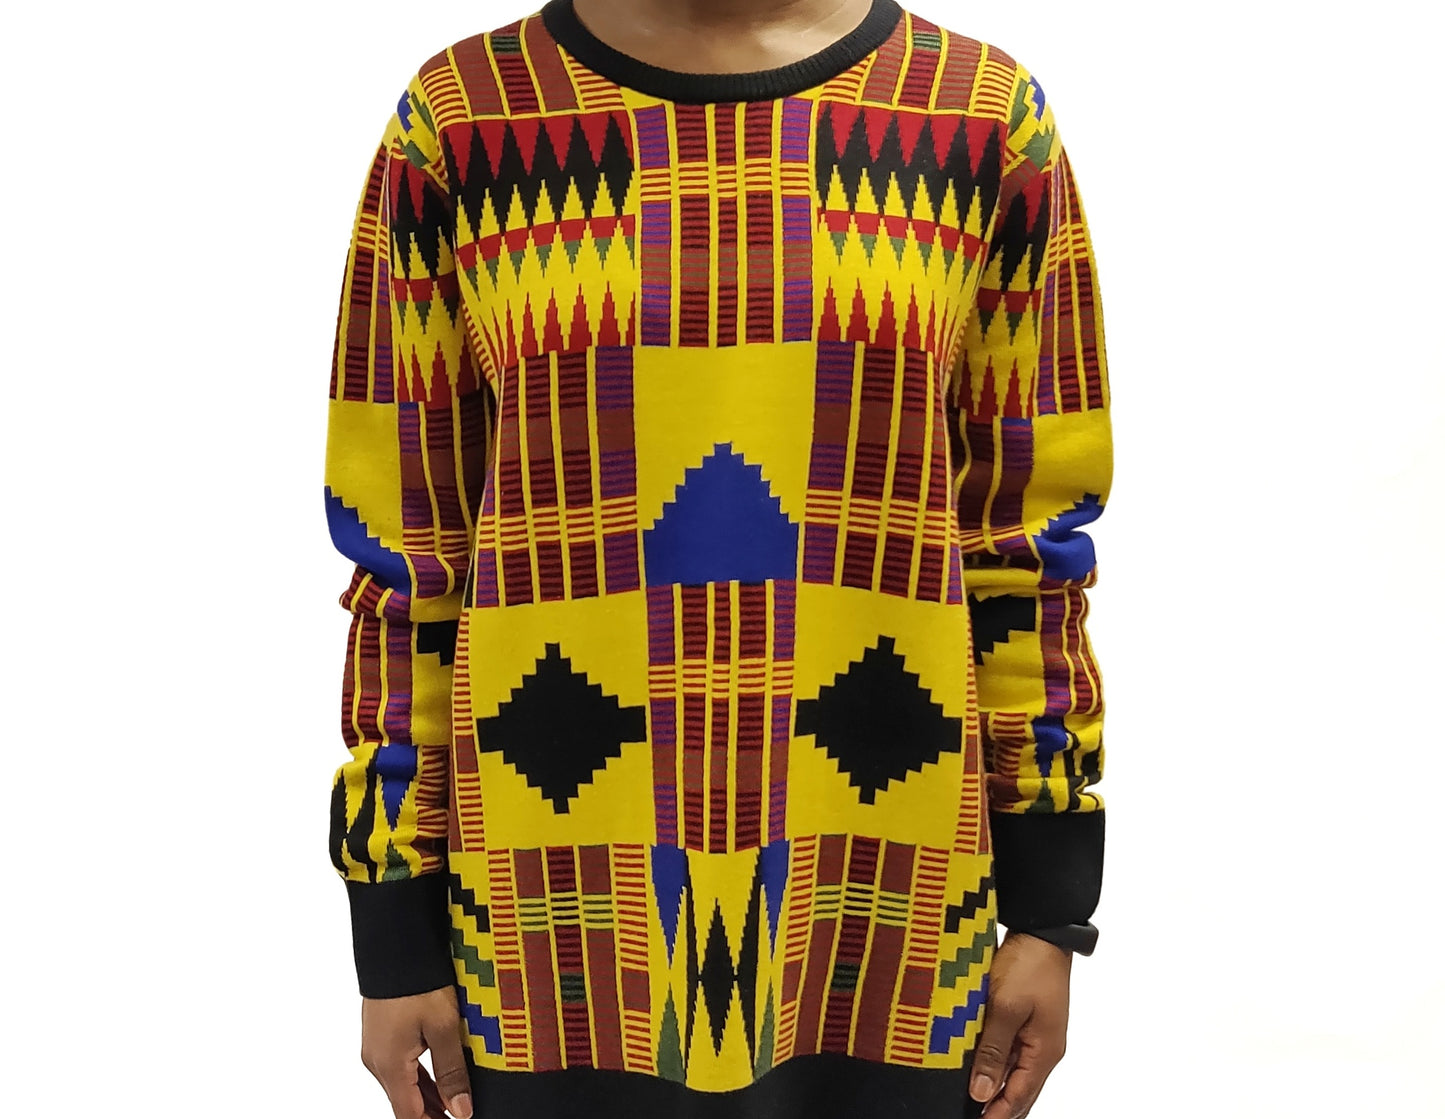 ADISHIE Kente Inspired Sweater